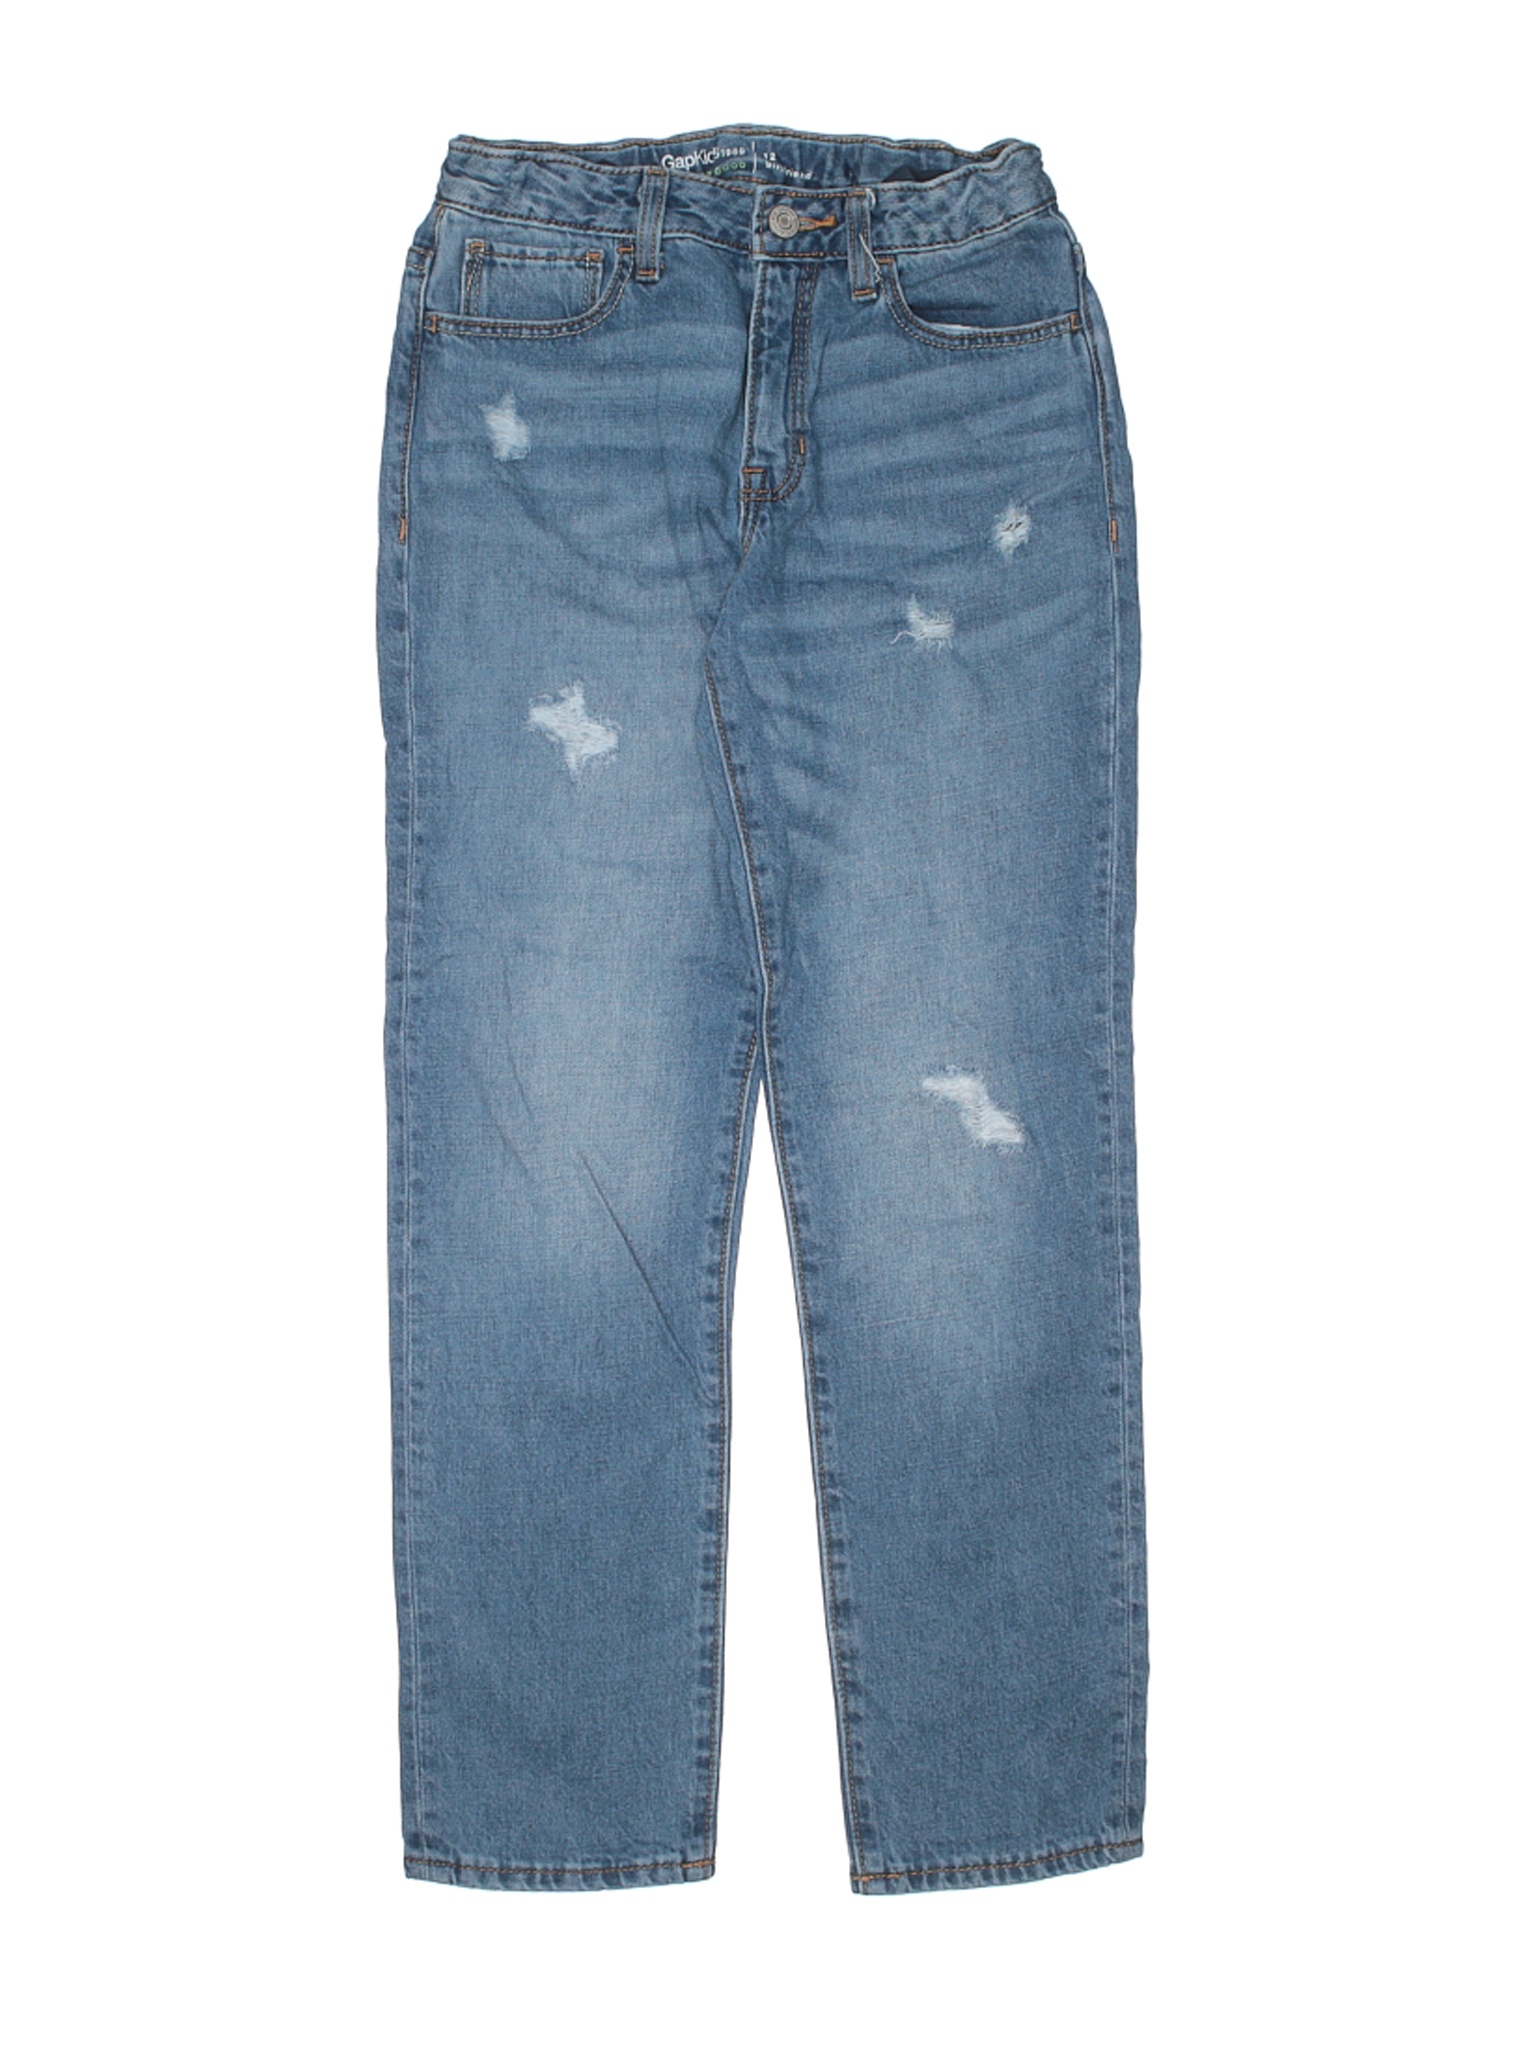 Gap Kids Girls Blue Jeans 12 | eBay